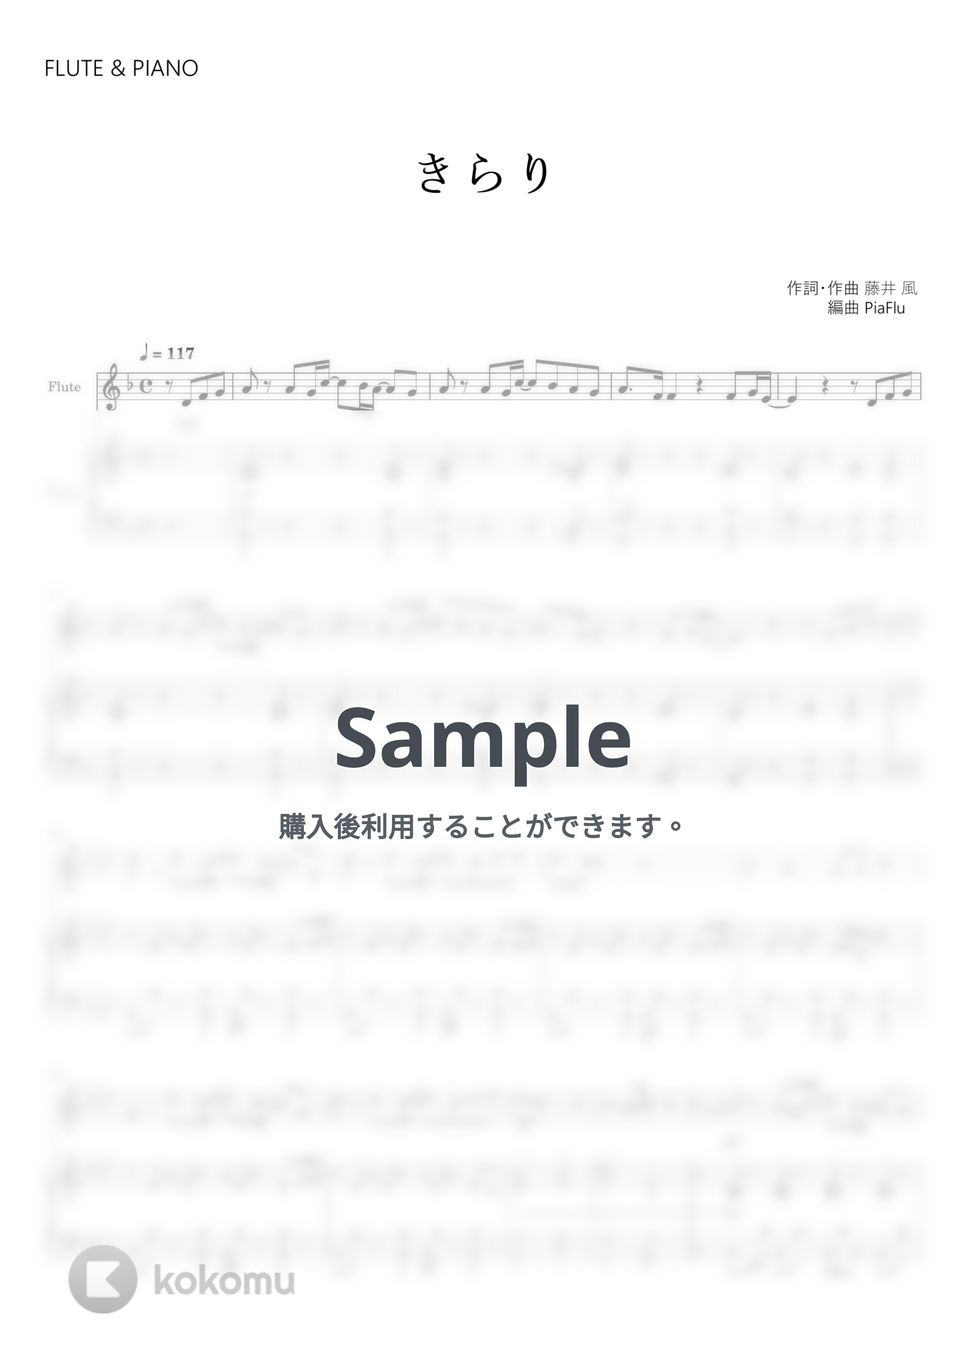 藤井 風 - きらり (フルート&ピアノ伴奏) by PiaFlu